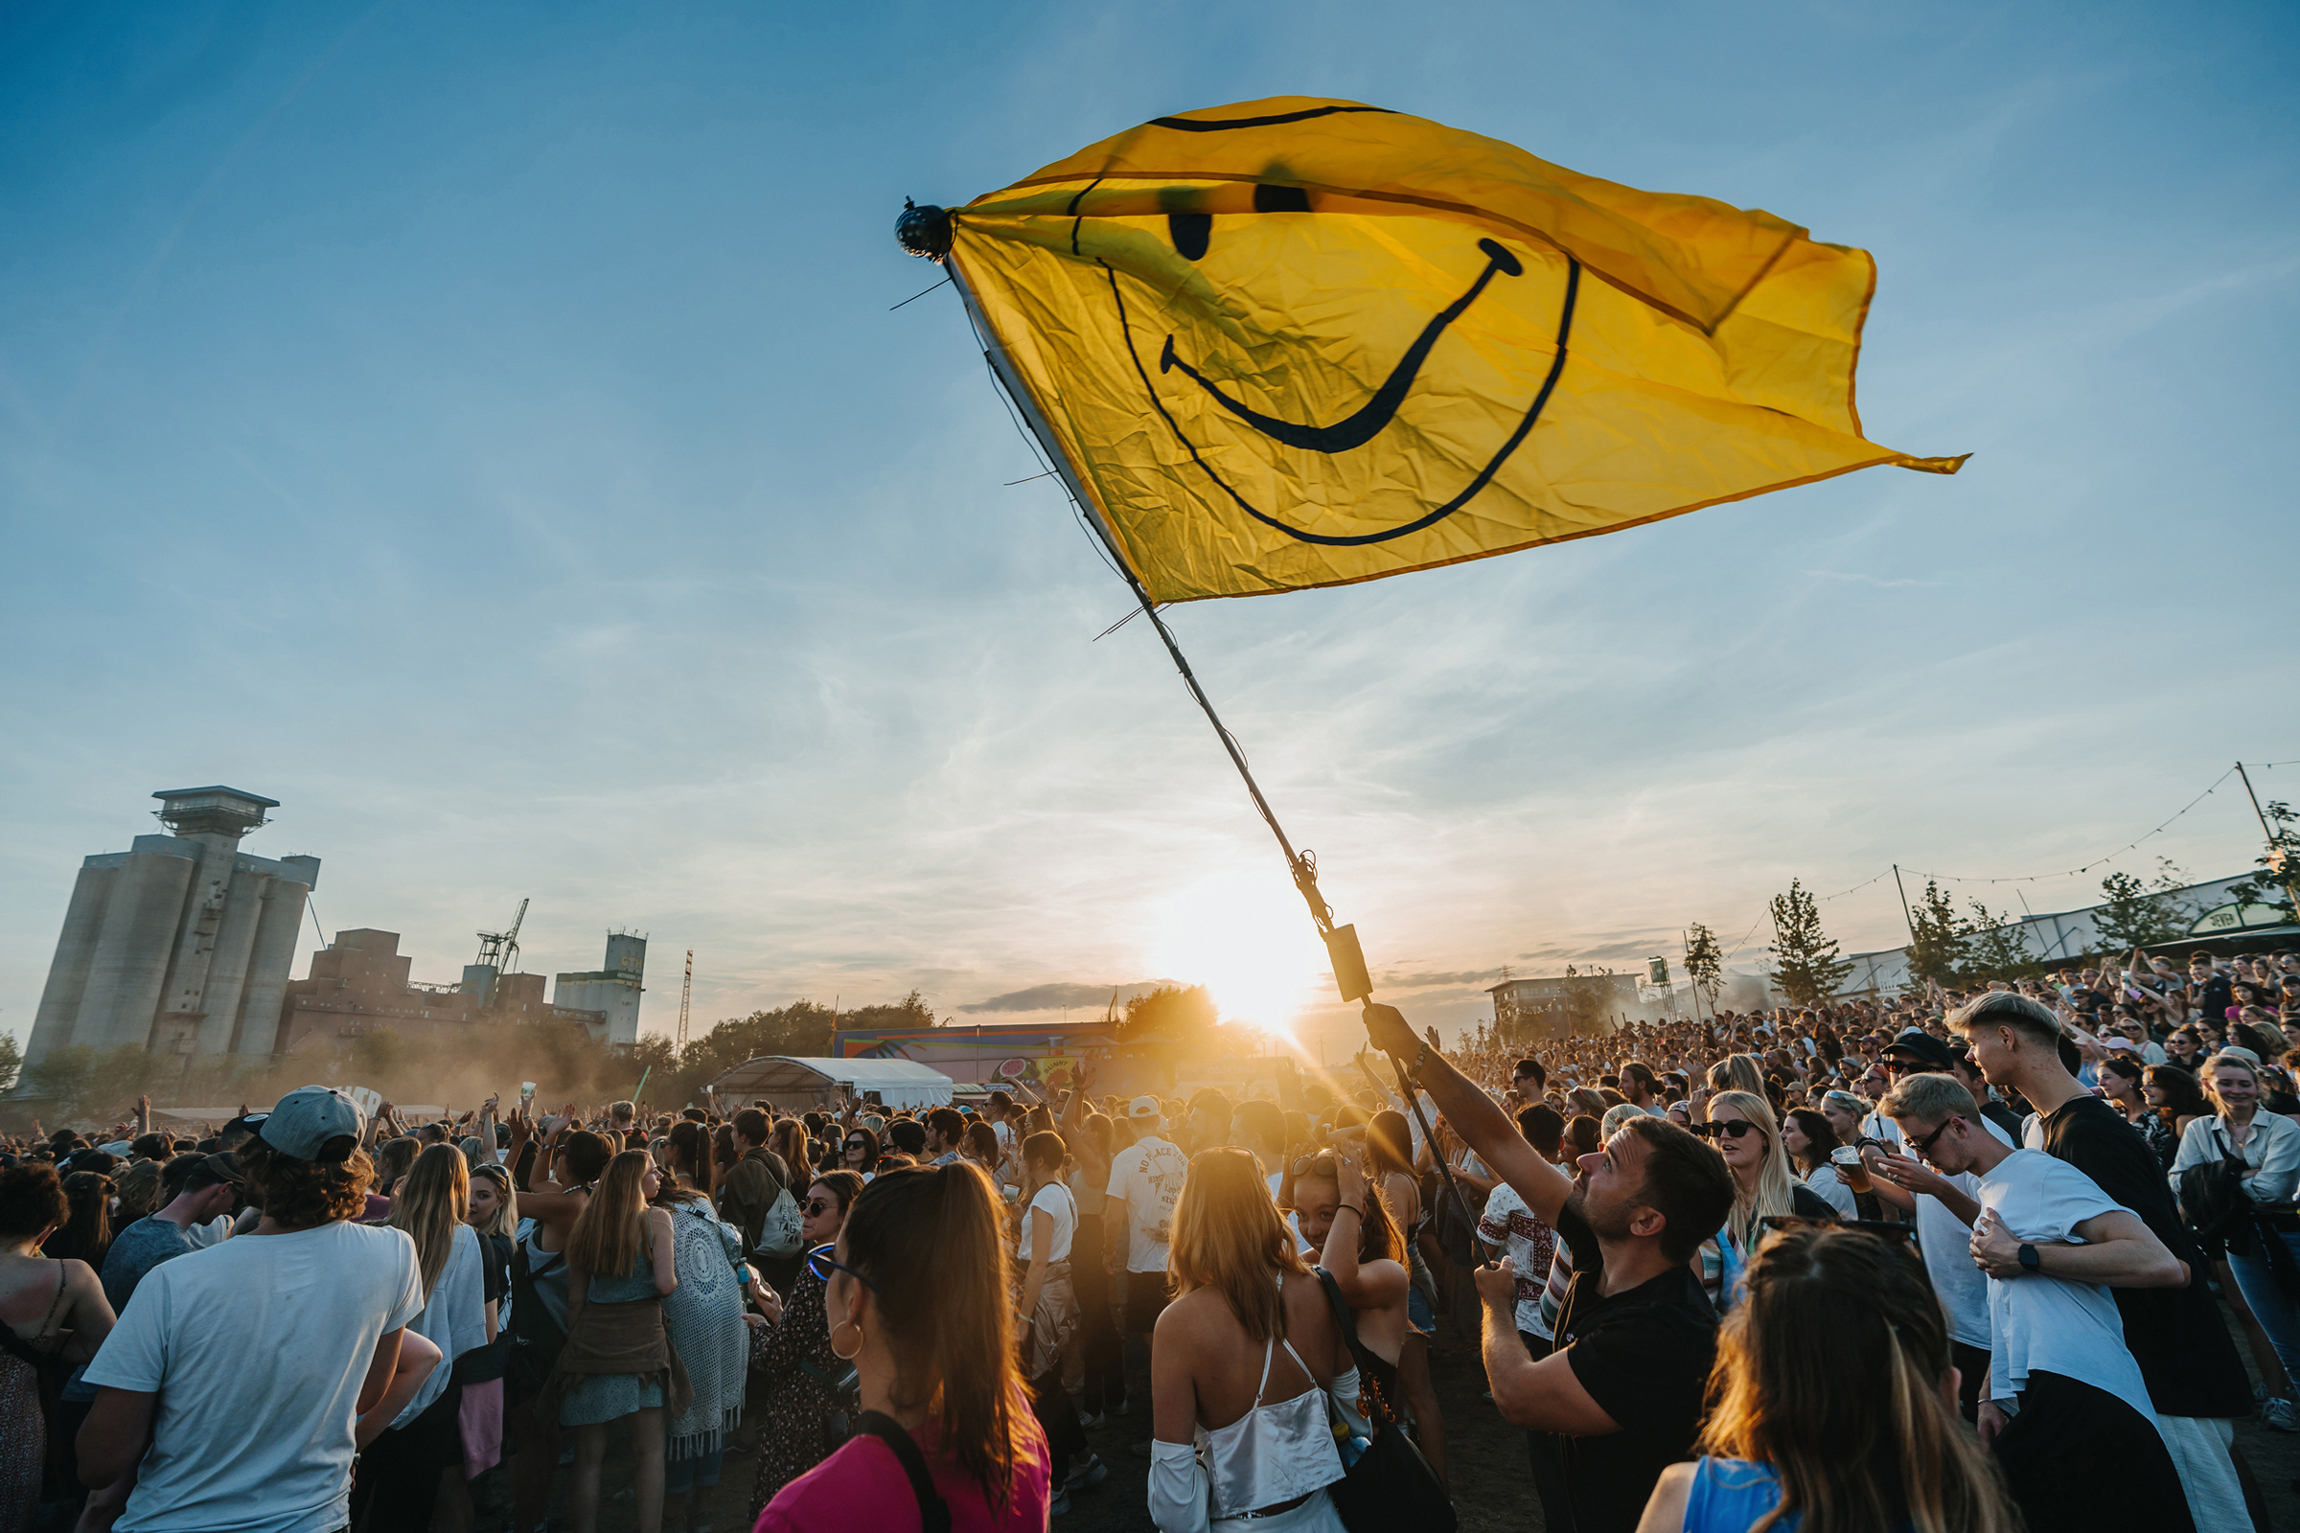 Festivalgelände, Sonnenuntergang, viele Menschen, einer Mann schwenkt vorne eine gelbe Fahne mit einem Smiley